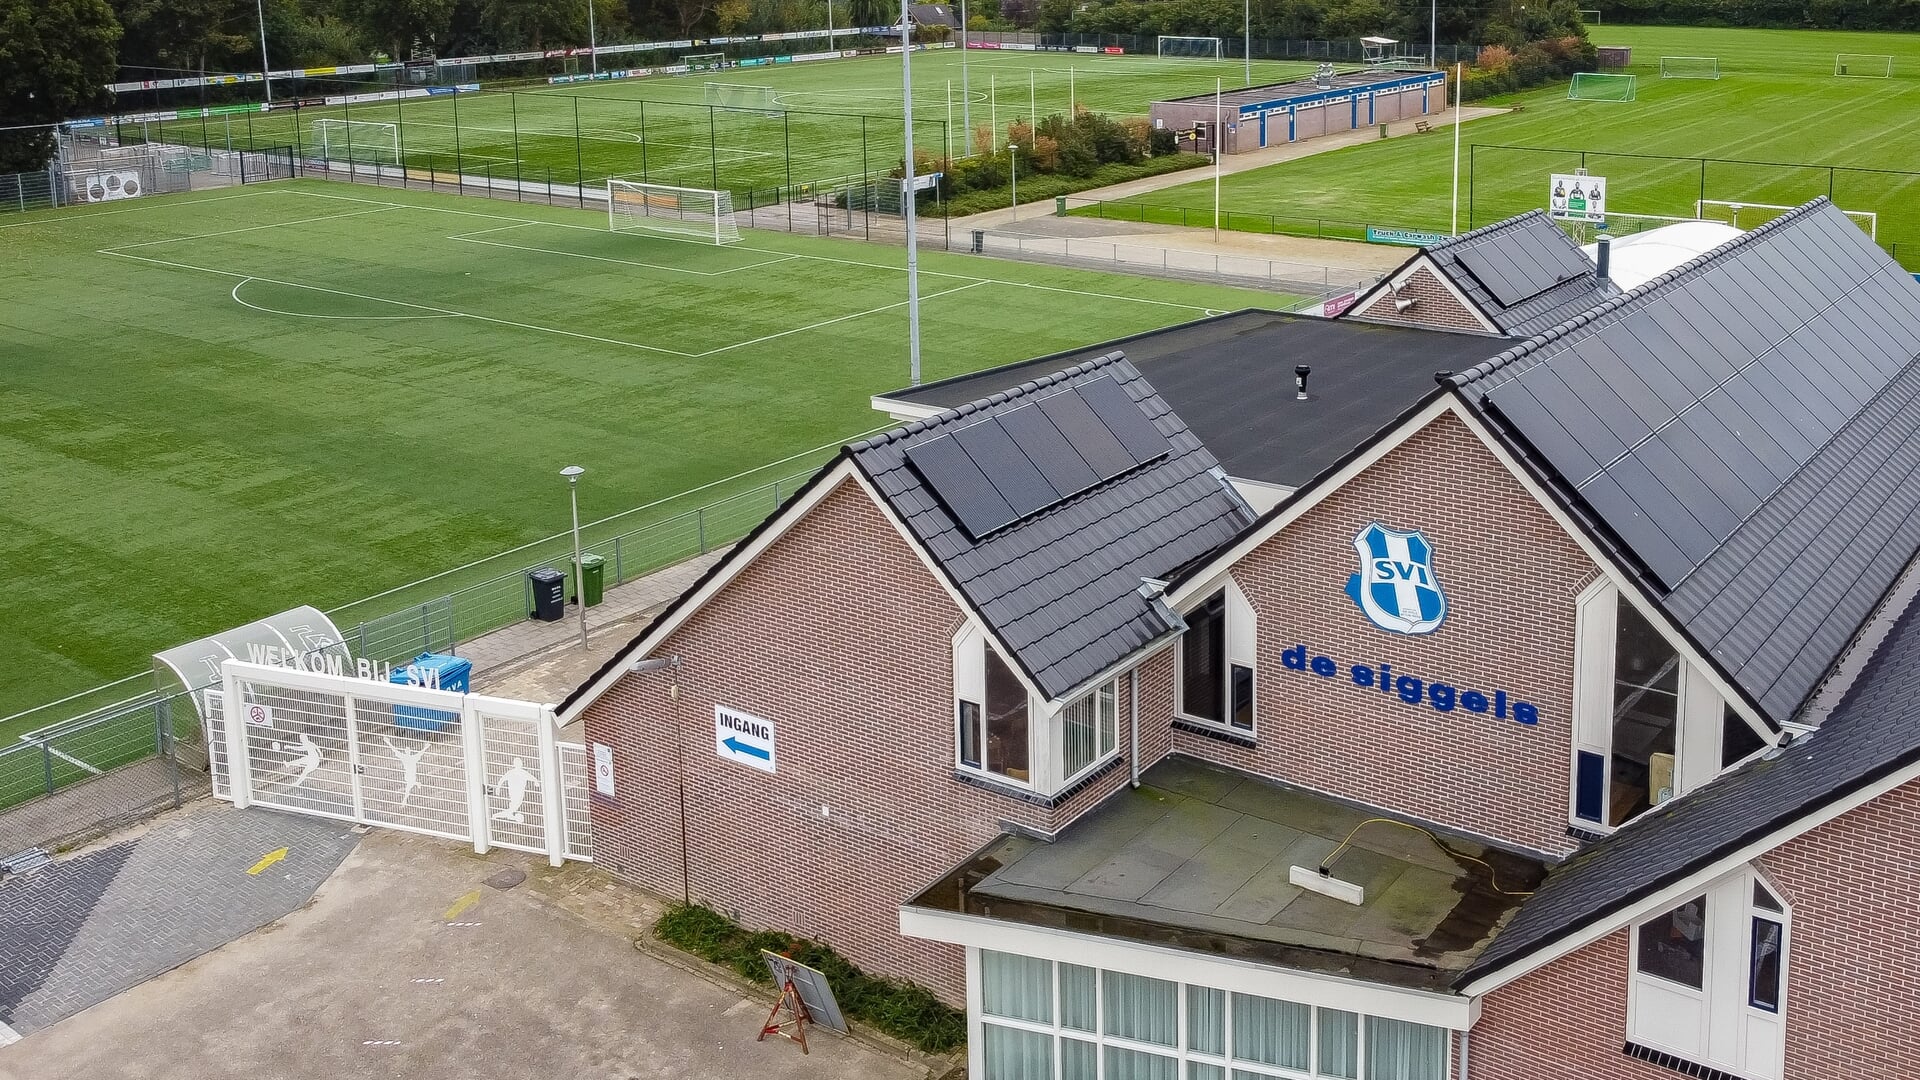 Voetbalvereniging SVI in Zwolle.